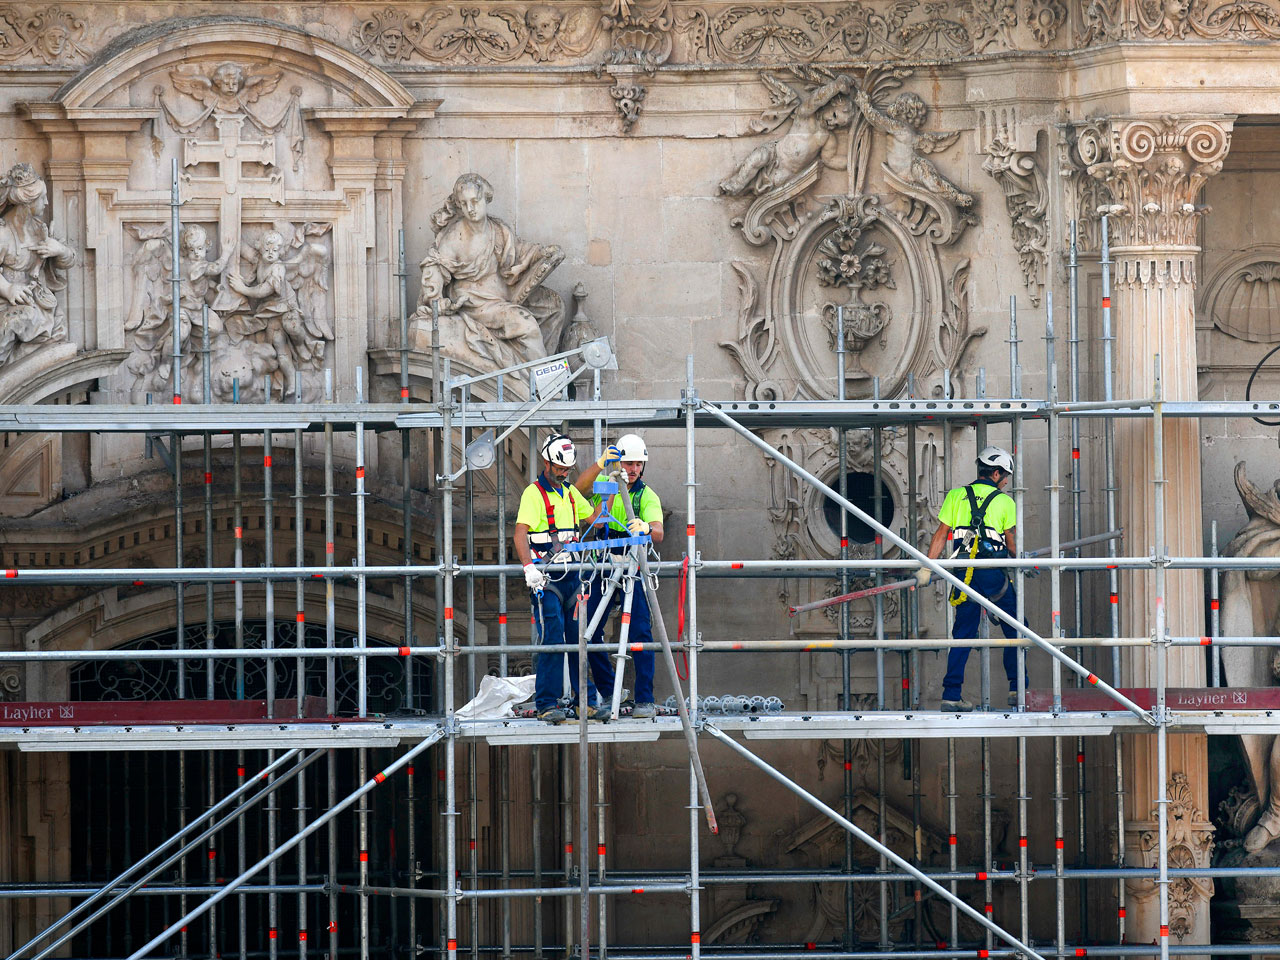 Orthem finaliza el andamio para la restauración de la fachada de la Catedral de Murcia